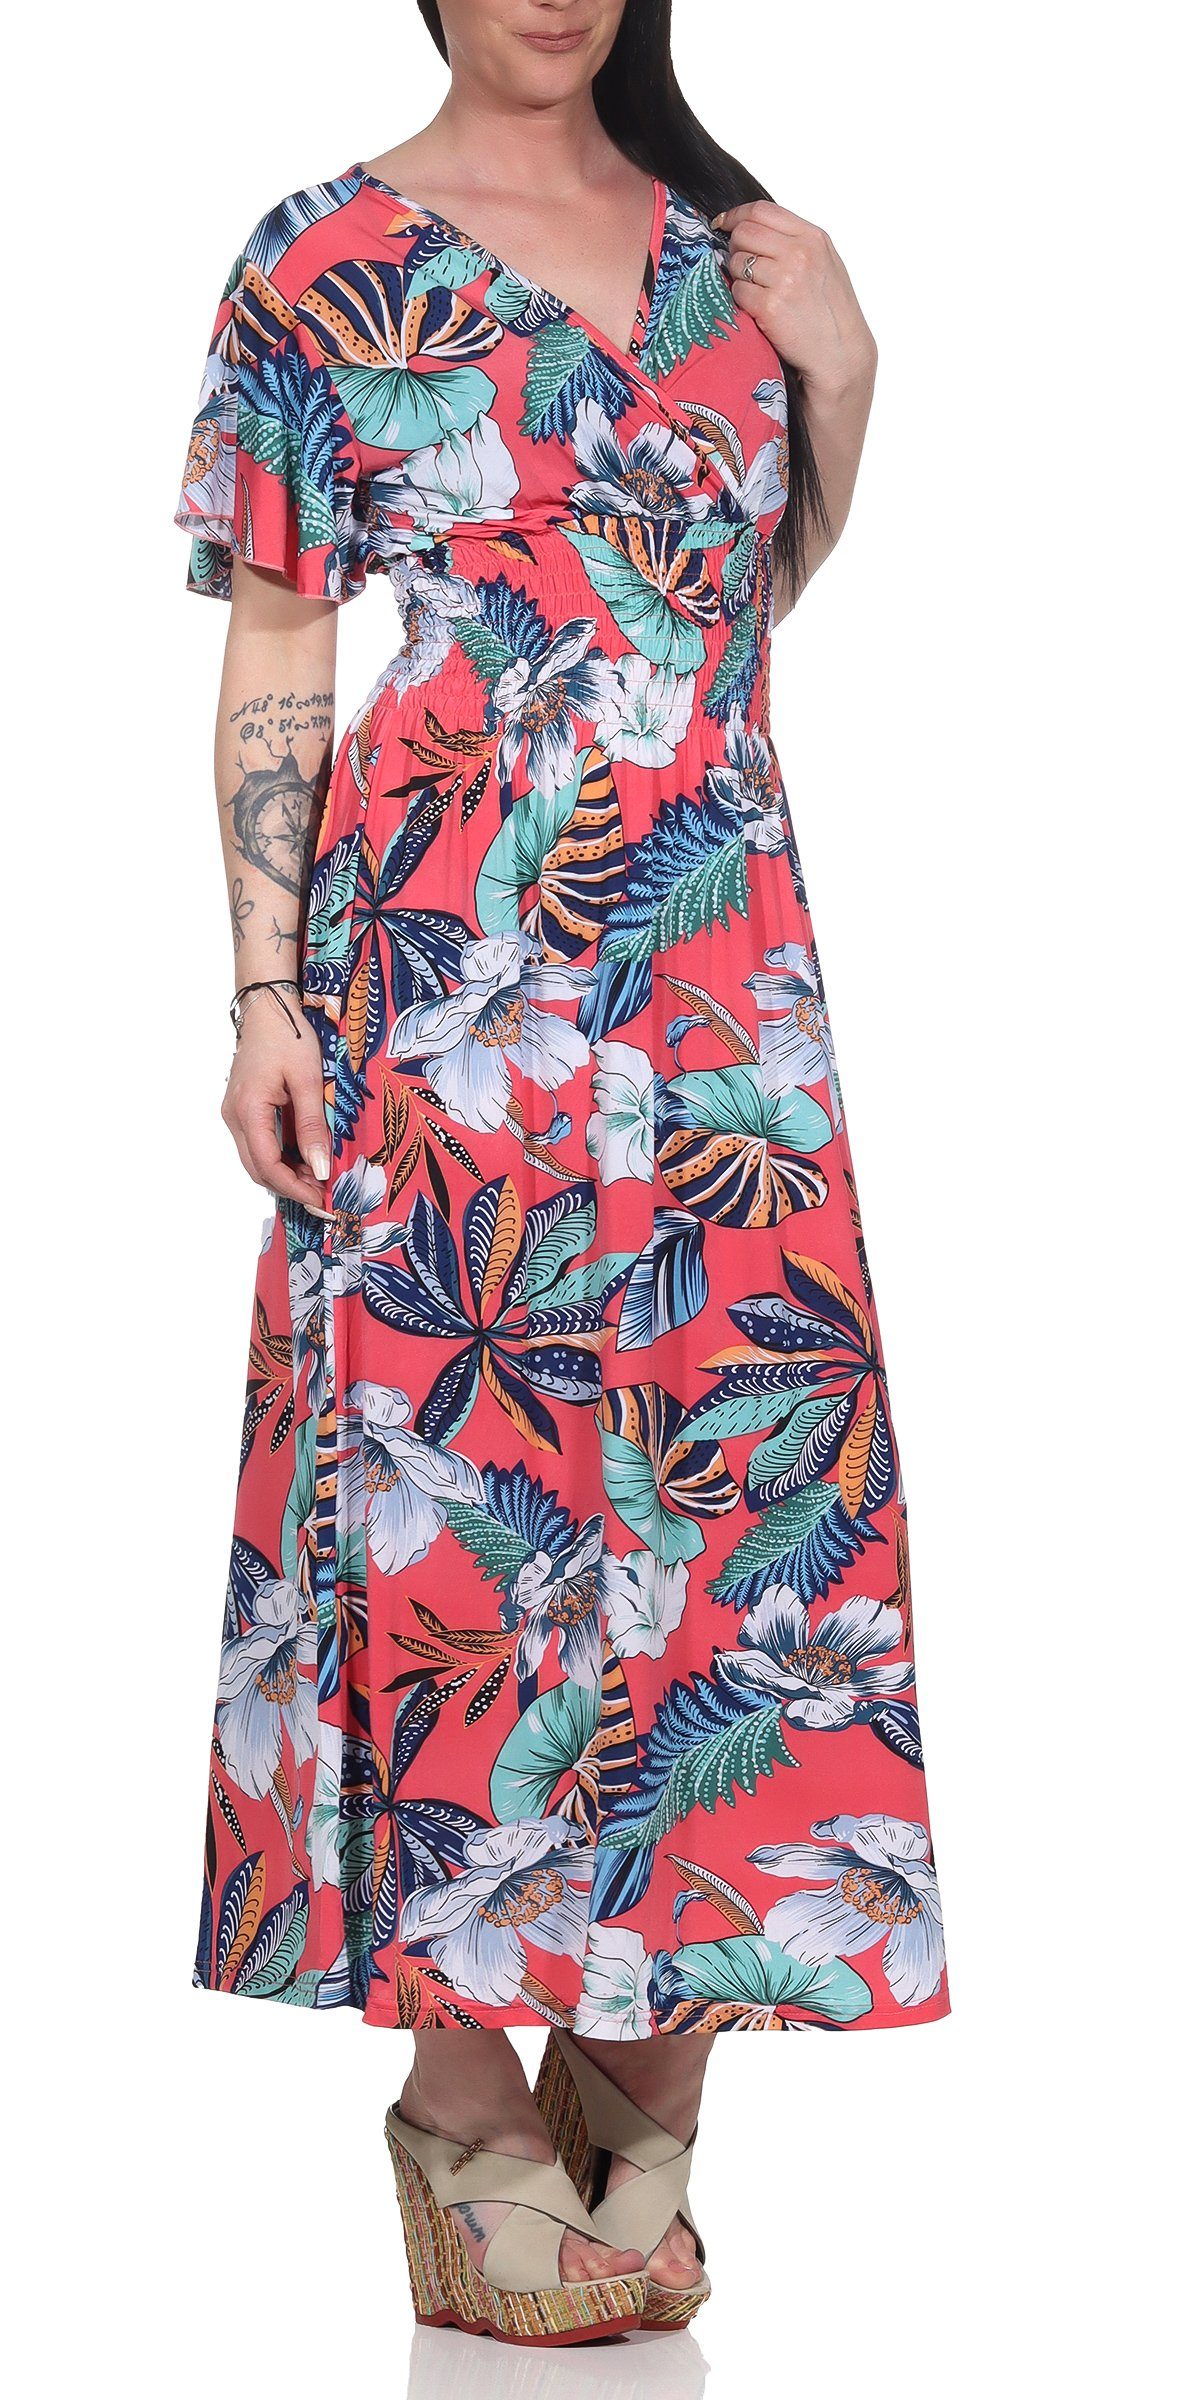 Aurela Damenmode Sommerkleid »Lange Kleider für Damen luftig & leichte Sommerkleider  langes Strandkleid« mit Blumendruck, Raffung in der Taille, Gesamtlänge:  132 - 135cm online kaufen | OTTO